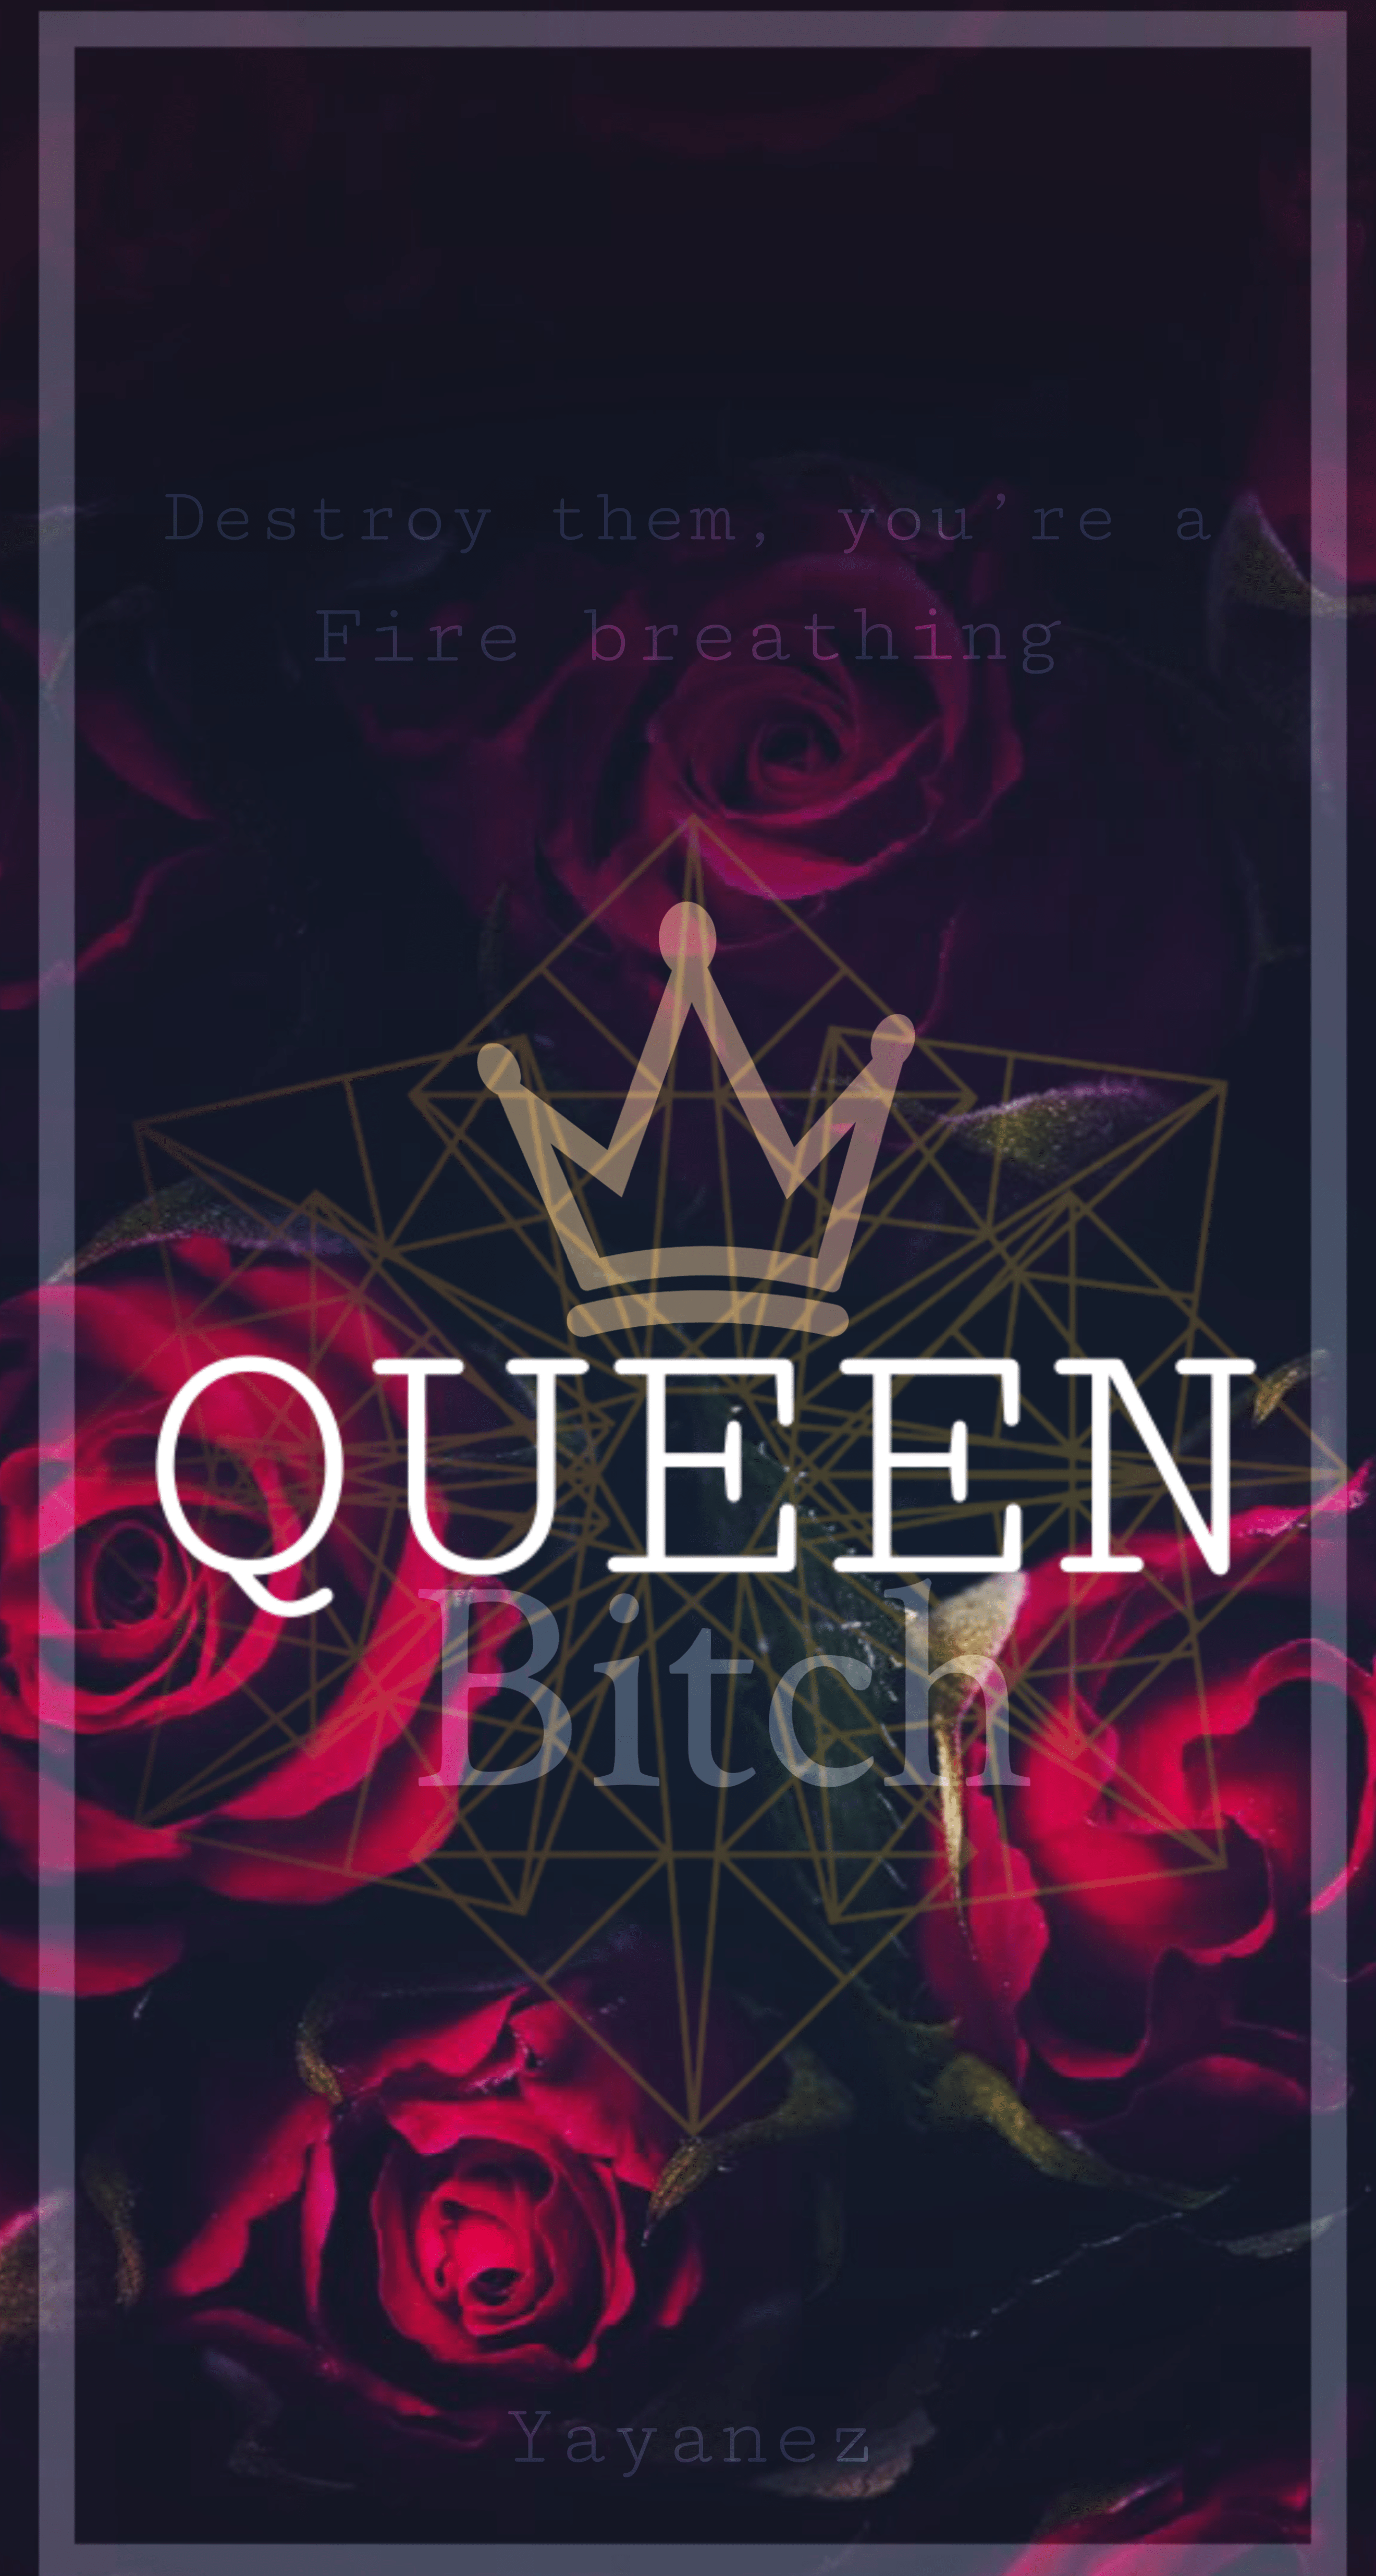 Queen Crown Wallpapers - Top Free Queen Crown Backgrounds - WallpaperAccess